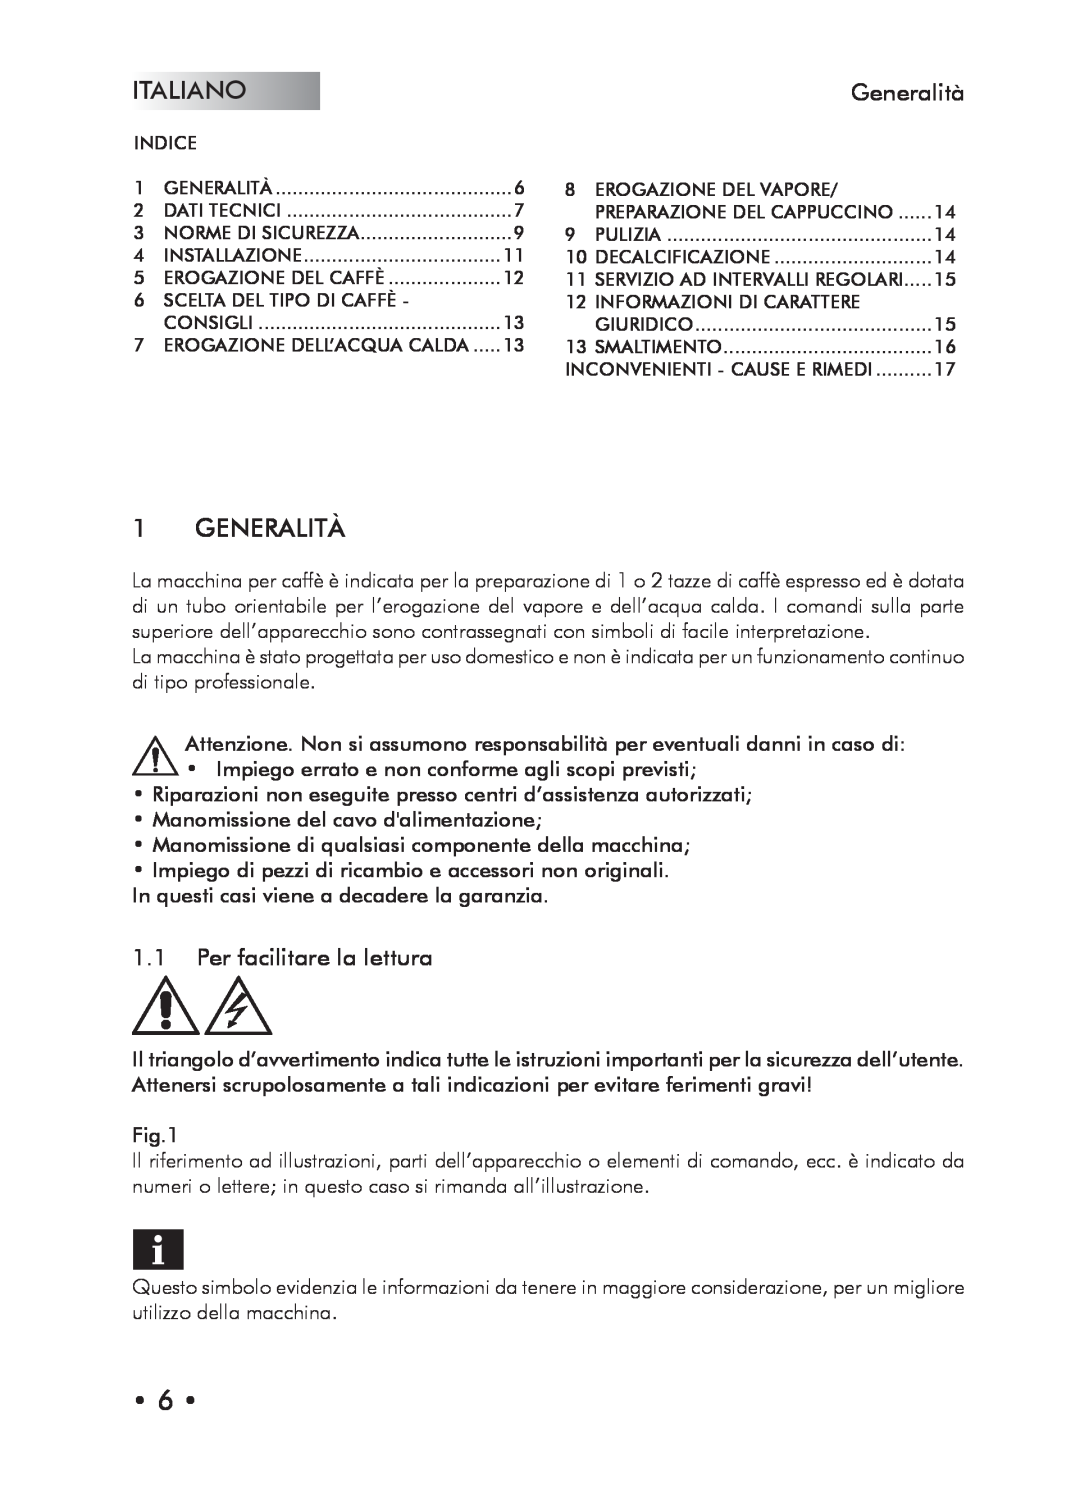 Saeco Coffee Makers Type SIN024X manual Italiano, Generalità, Per facilitare la lettura 